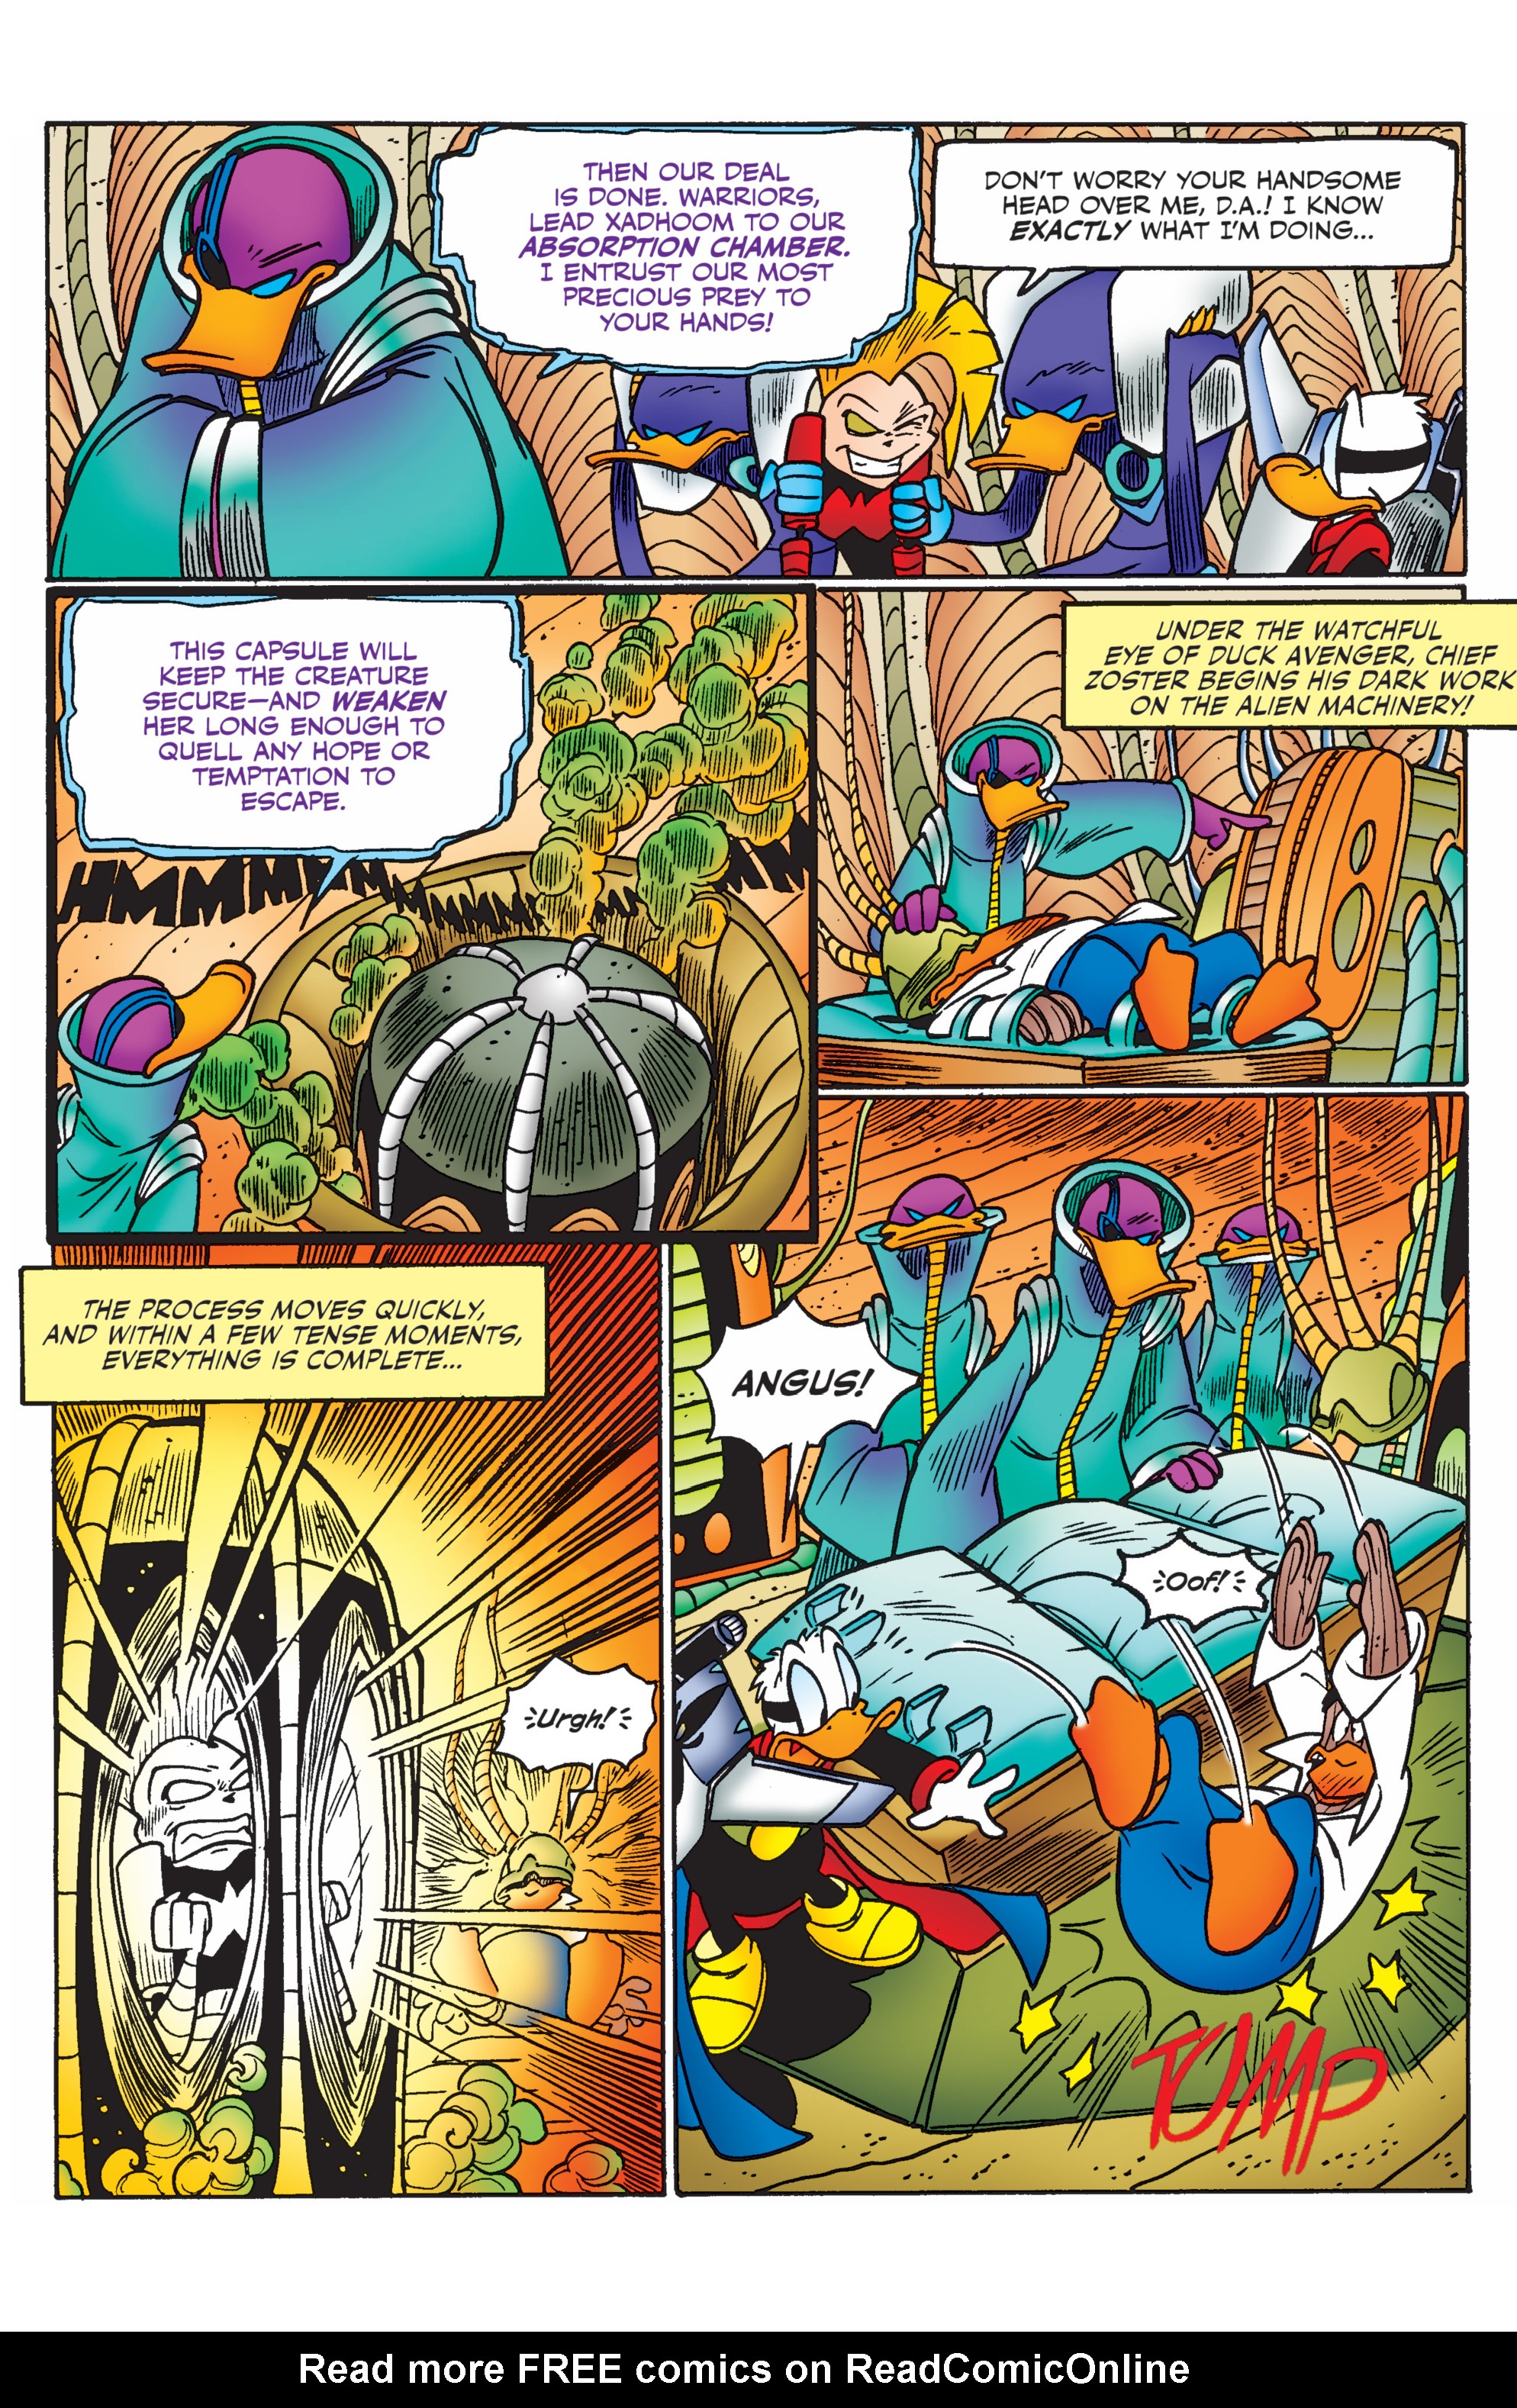 Read online Duck Avenger comic -  Issue #3 - 60